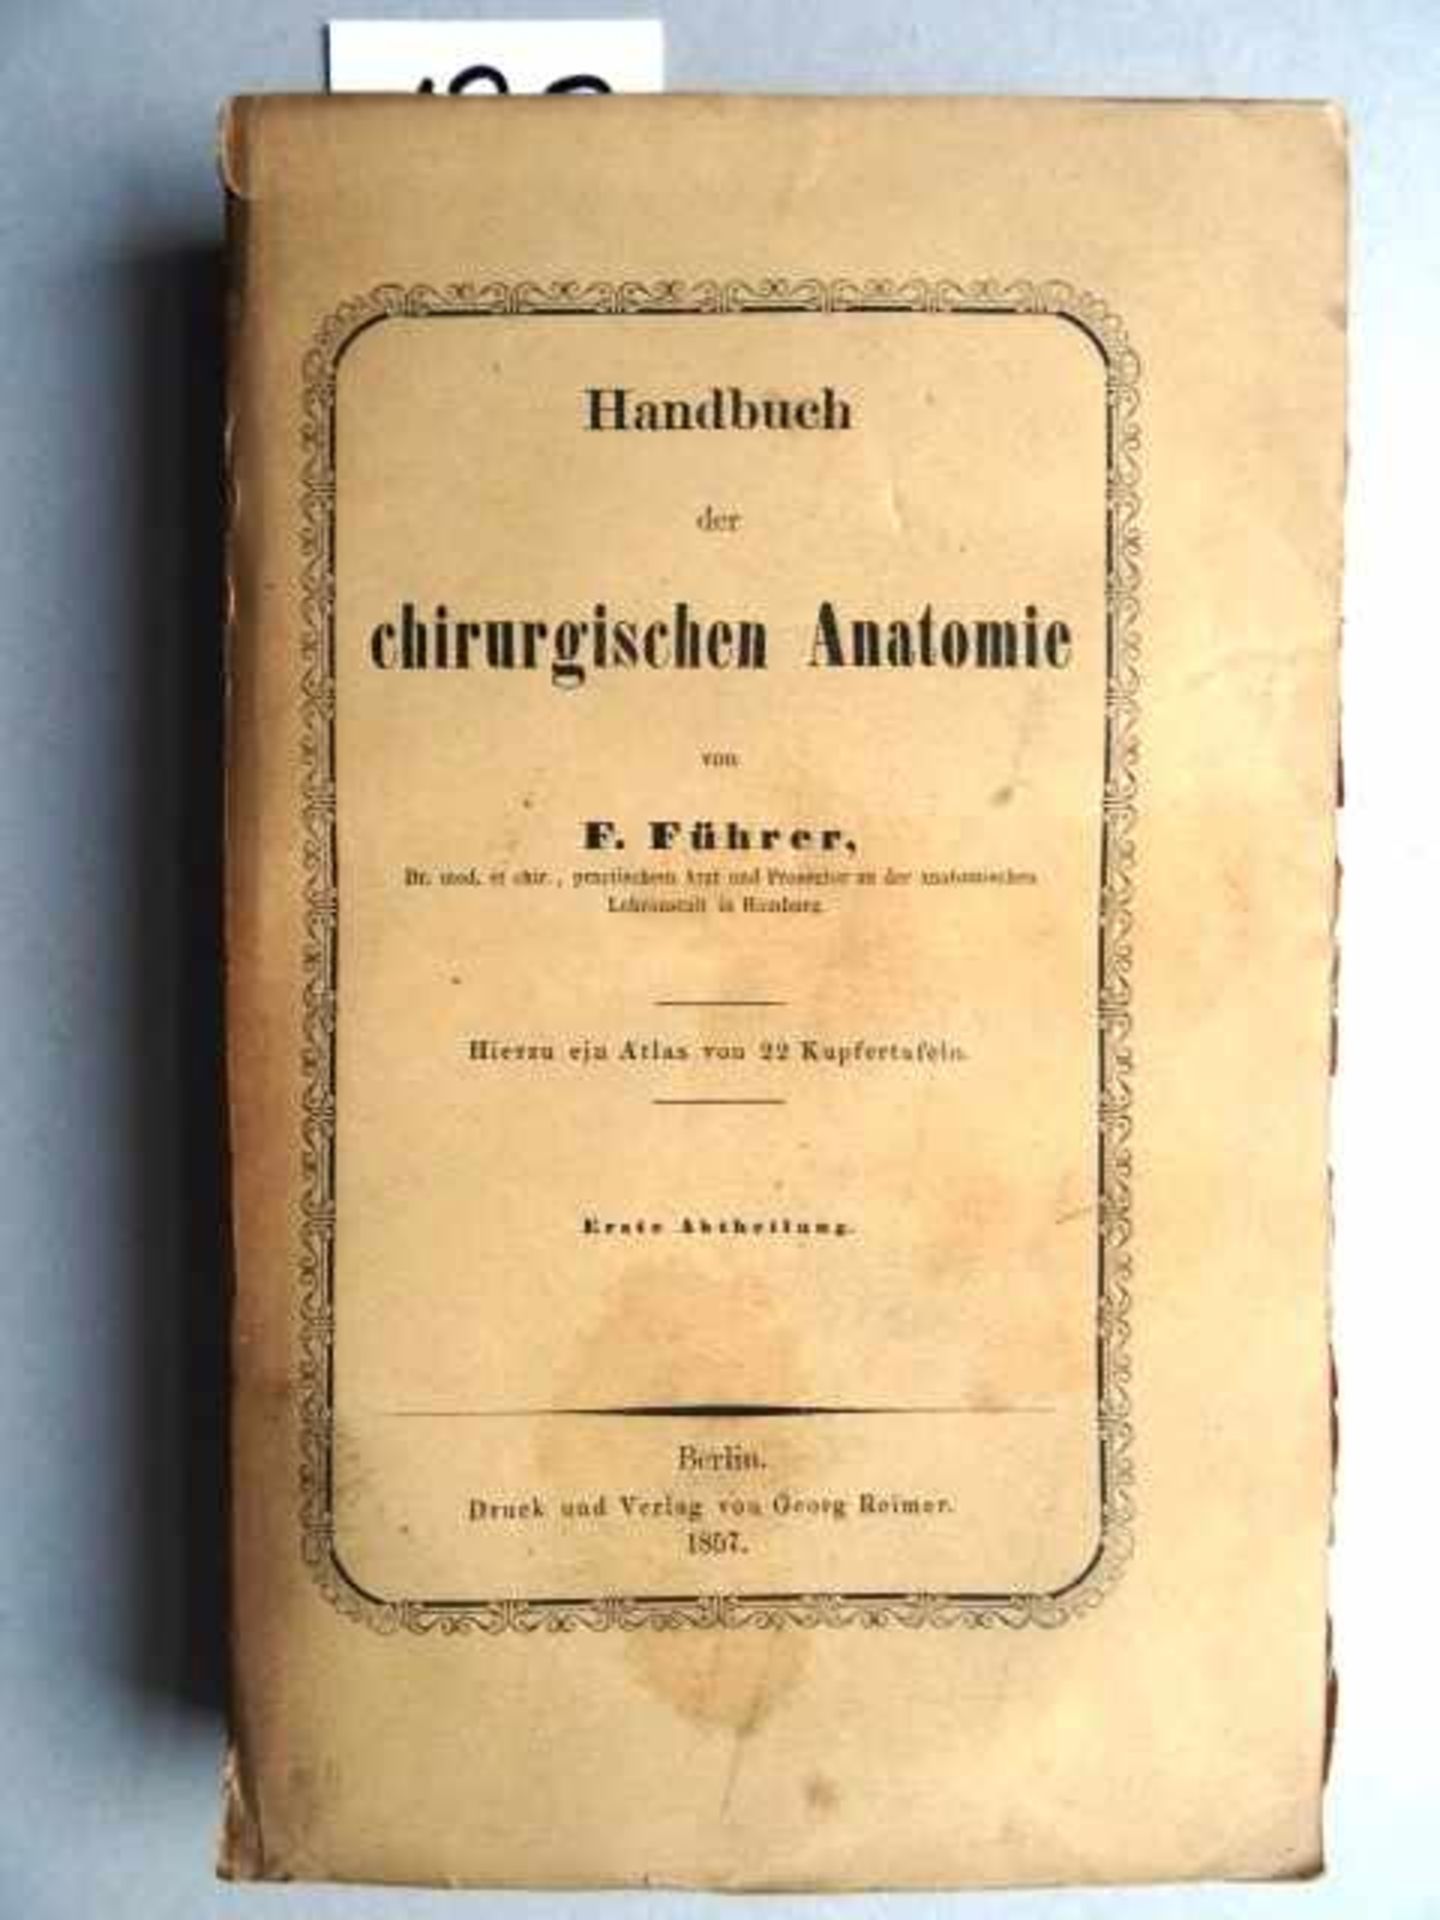 Führer, F. Handbuch der chirurgischen Anatomie. 2 Text- u. 1 Tafelband. Berlin, Reimer, 1857. 1 Bl.,